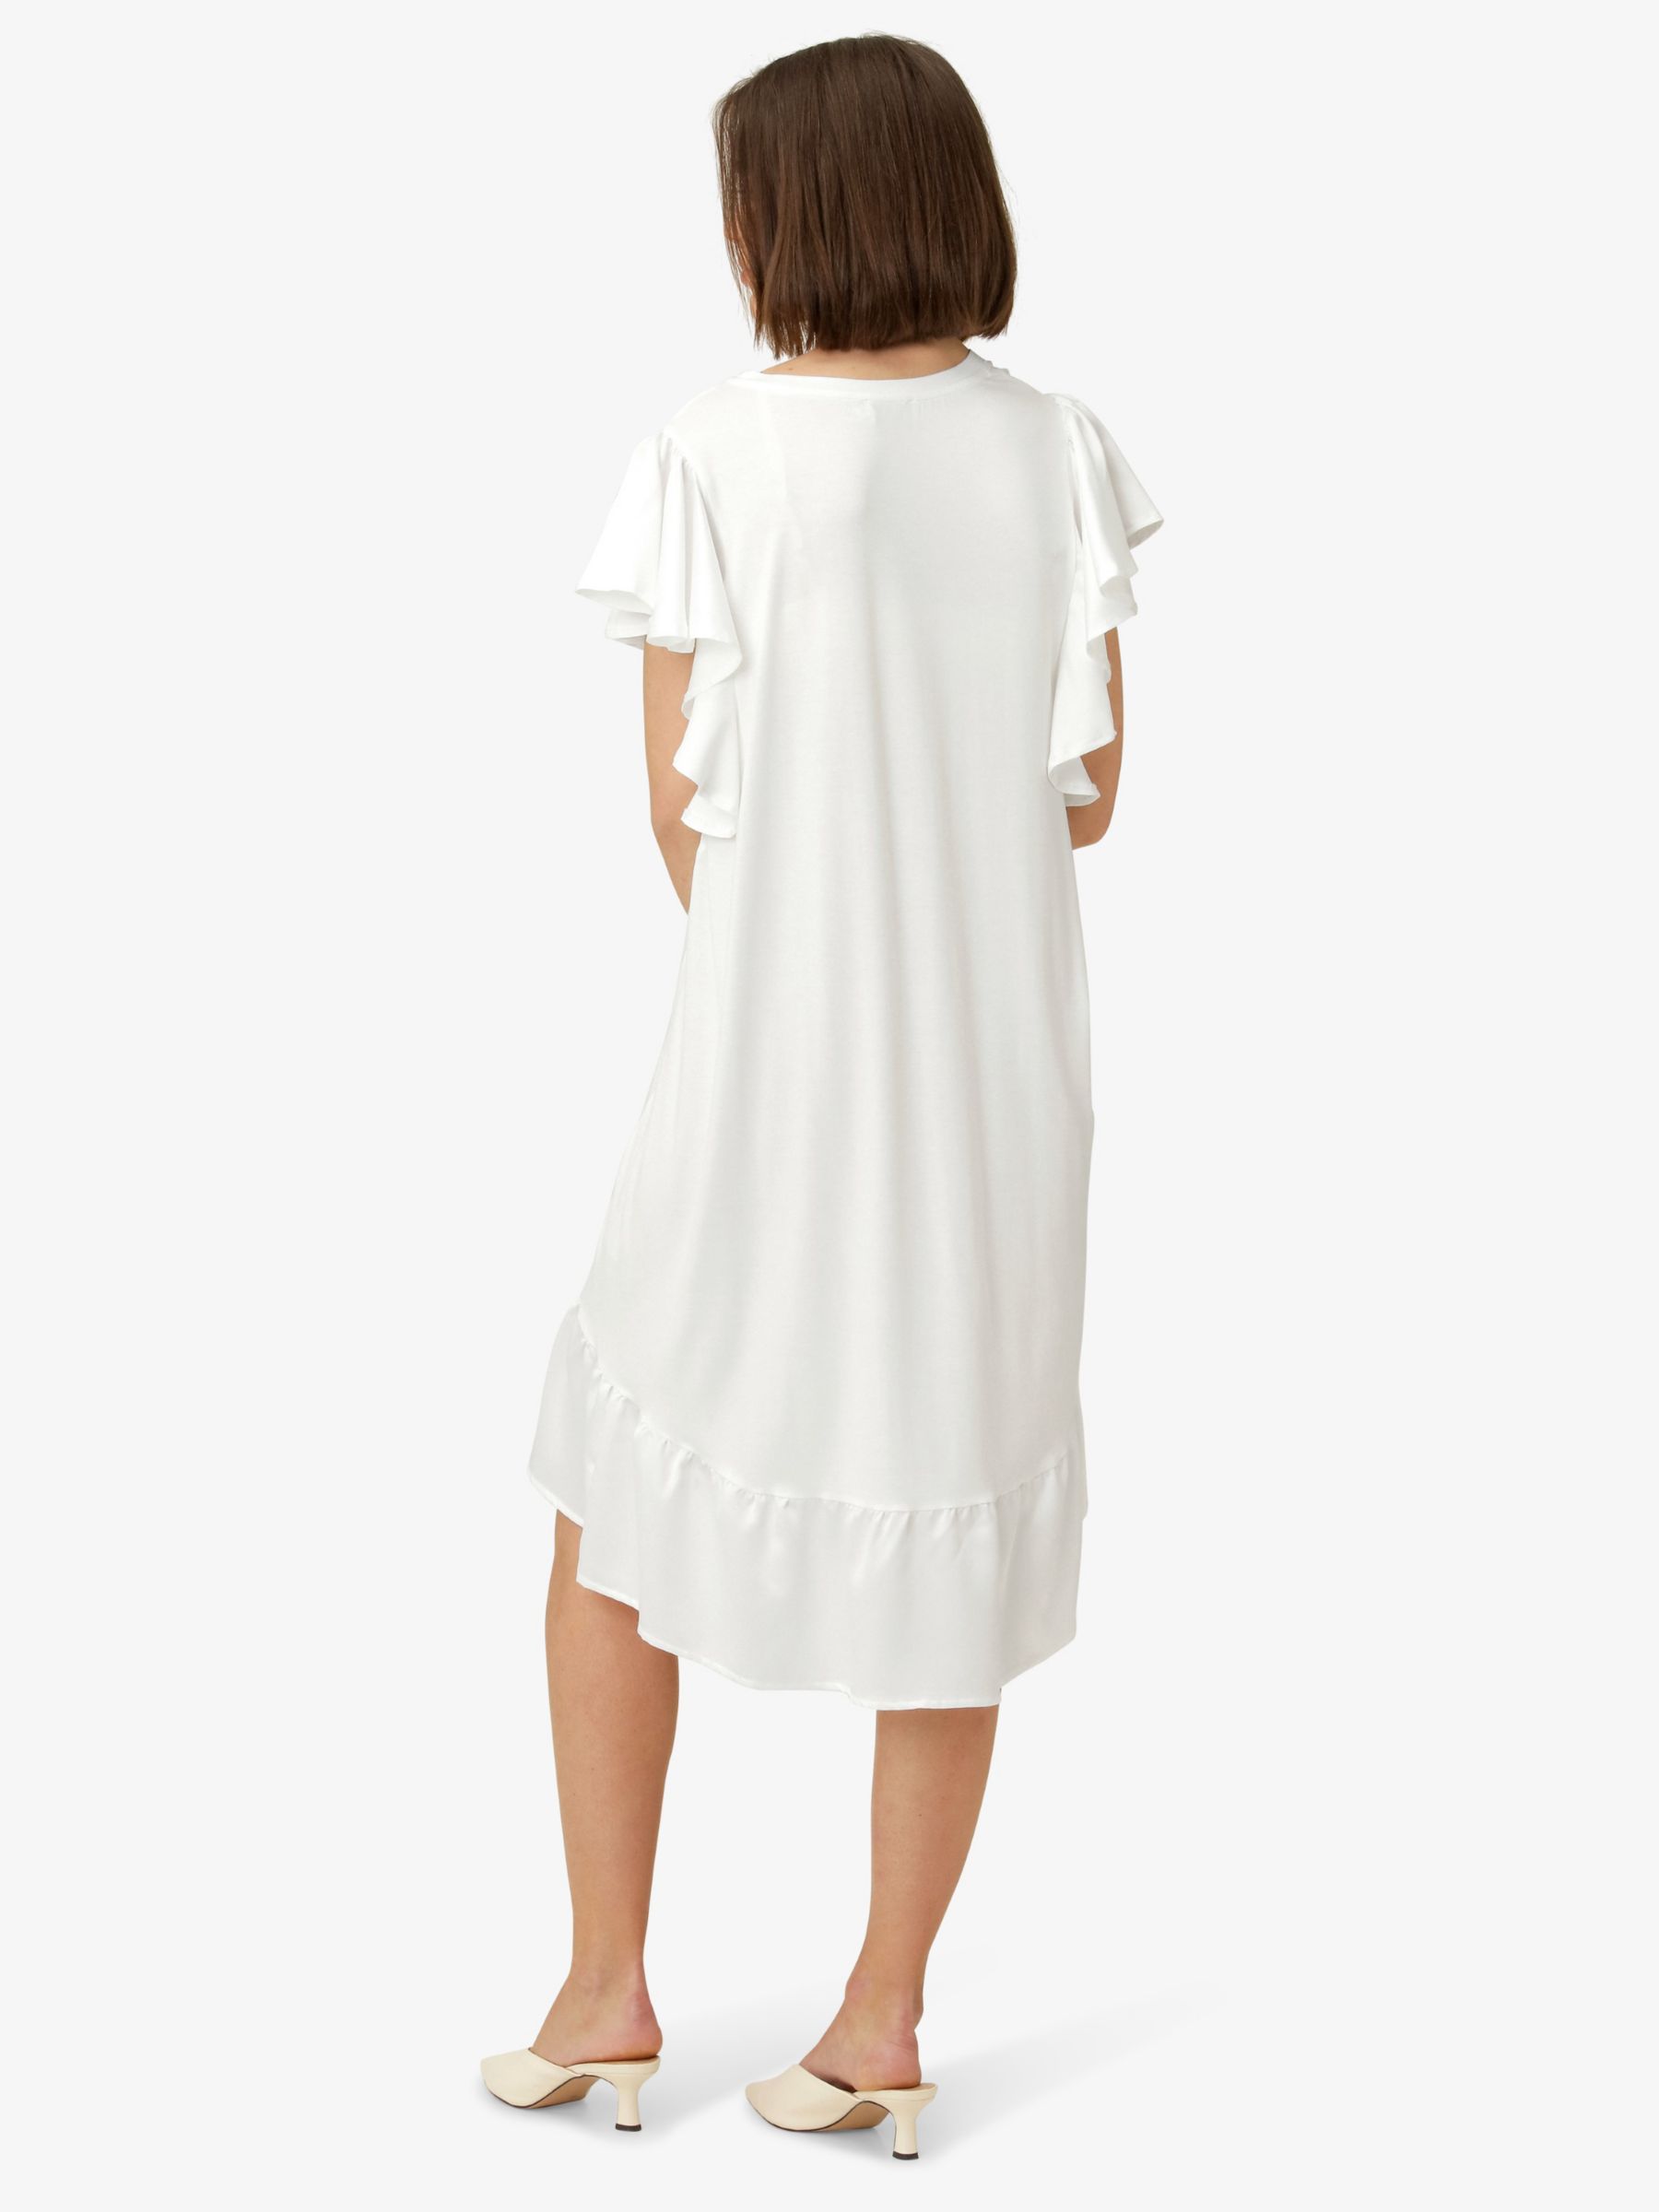 Noa Noa Katie Ruffled Raglan Sleeve Dress, White, XXS